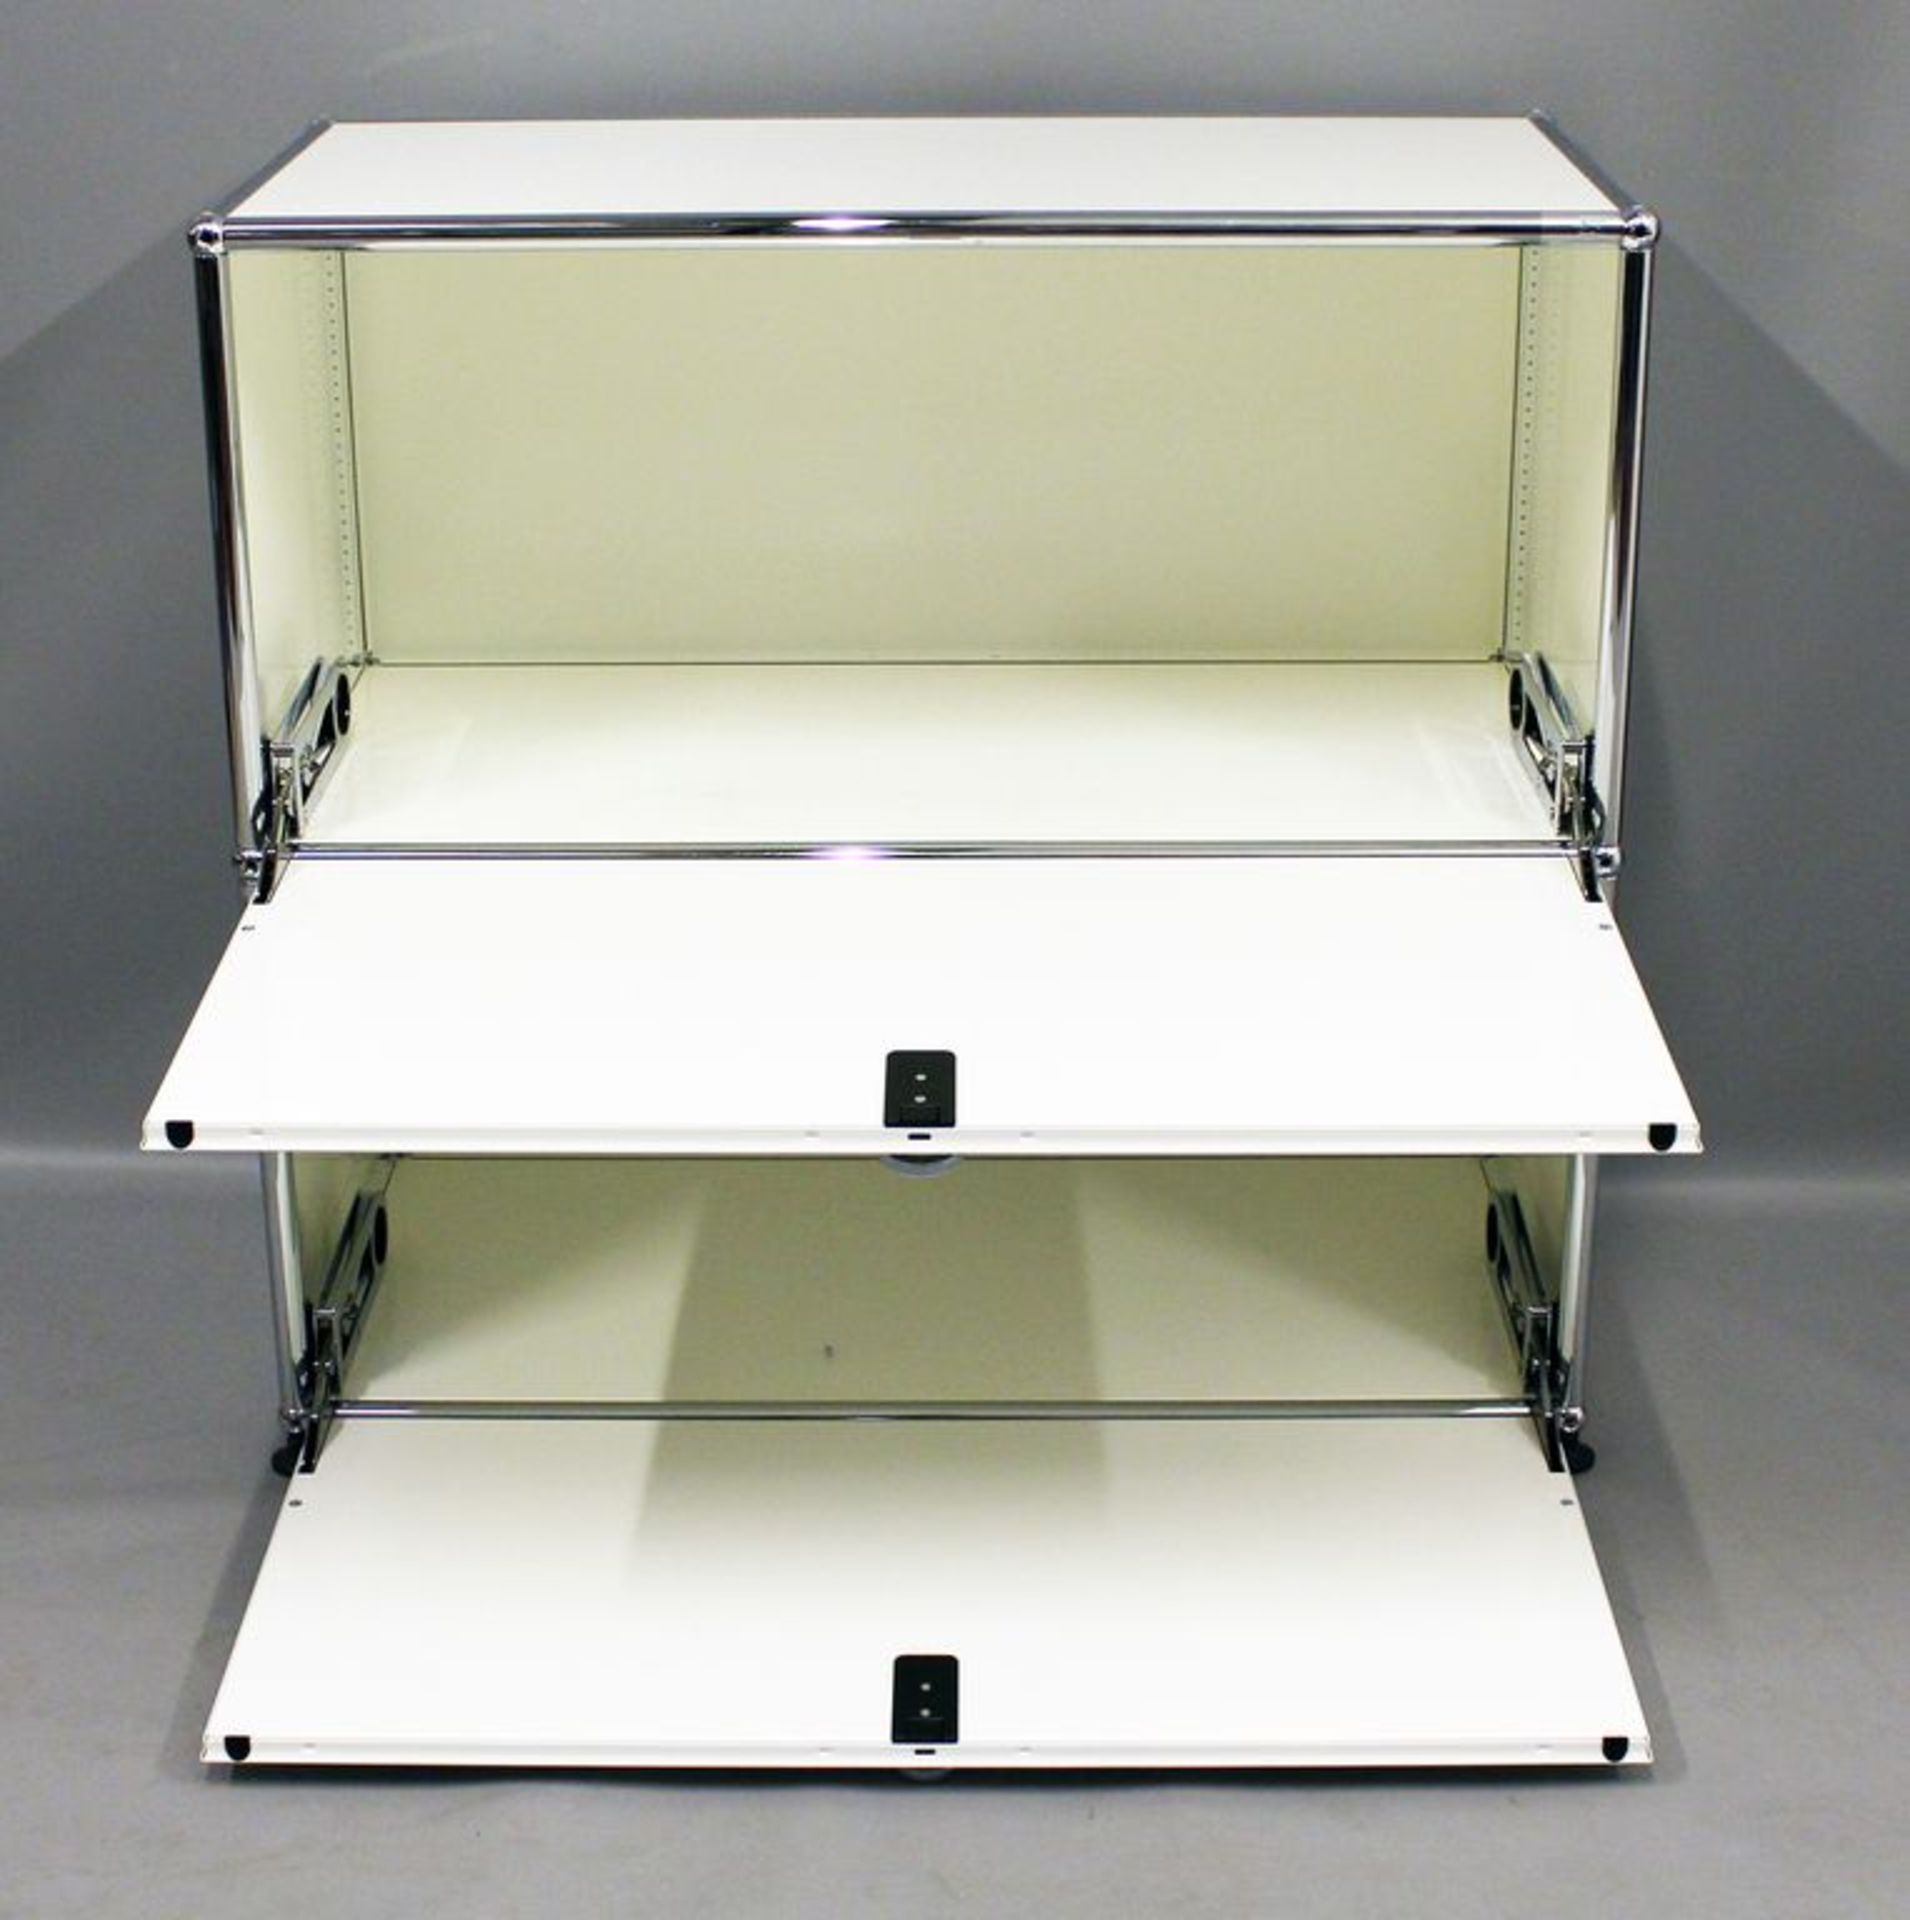 Sideboard, USM Haller. Verchromtes Stahlrohr, weiß lackiertes Metall. Zwei ausklappbare Fächer ( - Bild 2 aus 2